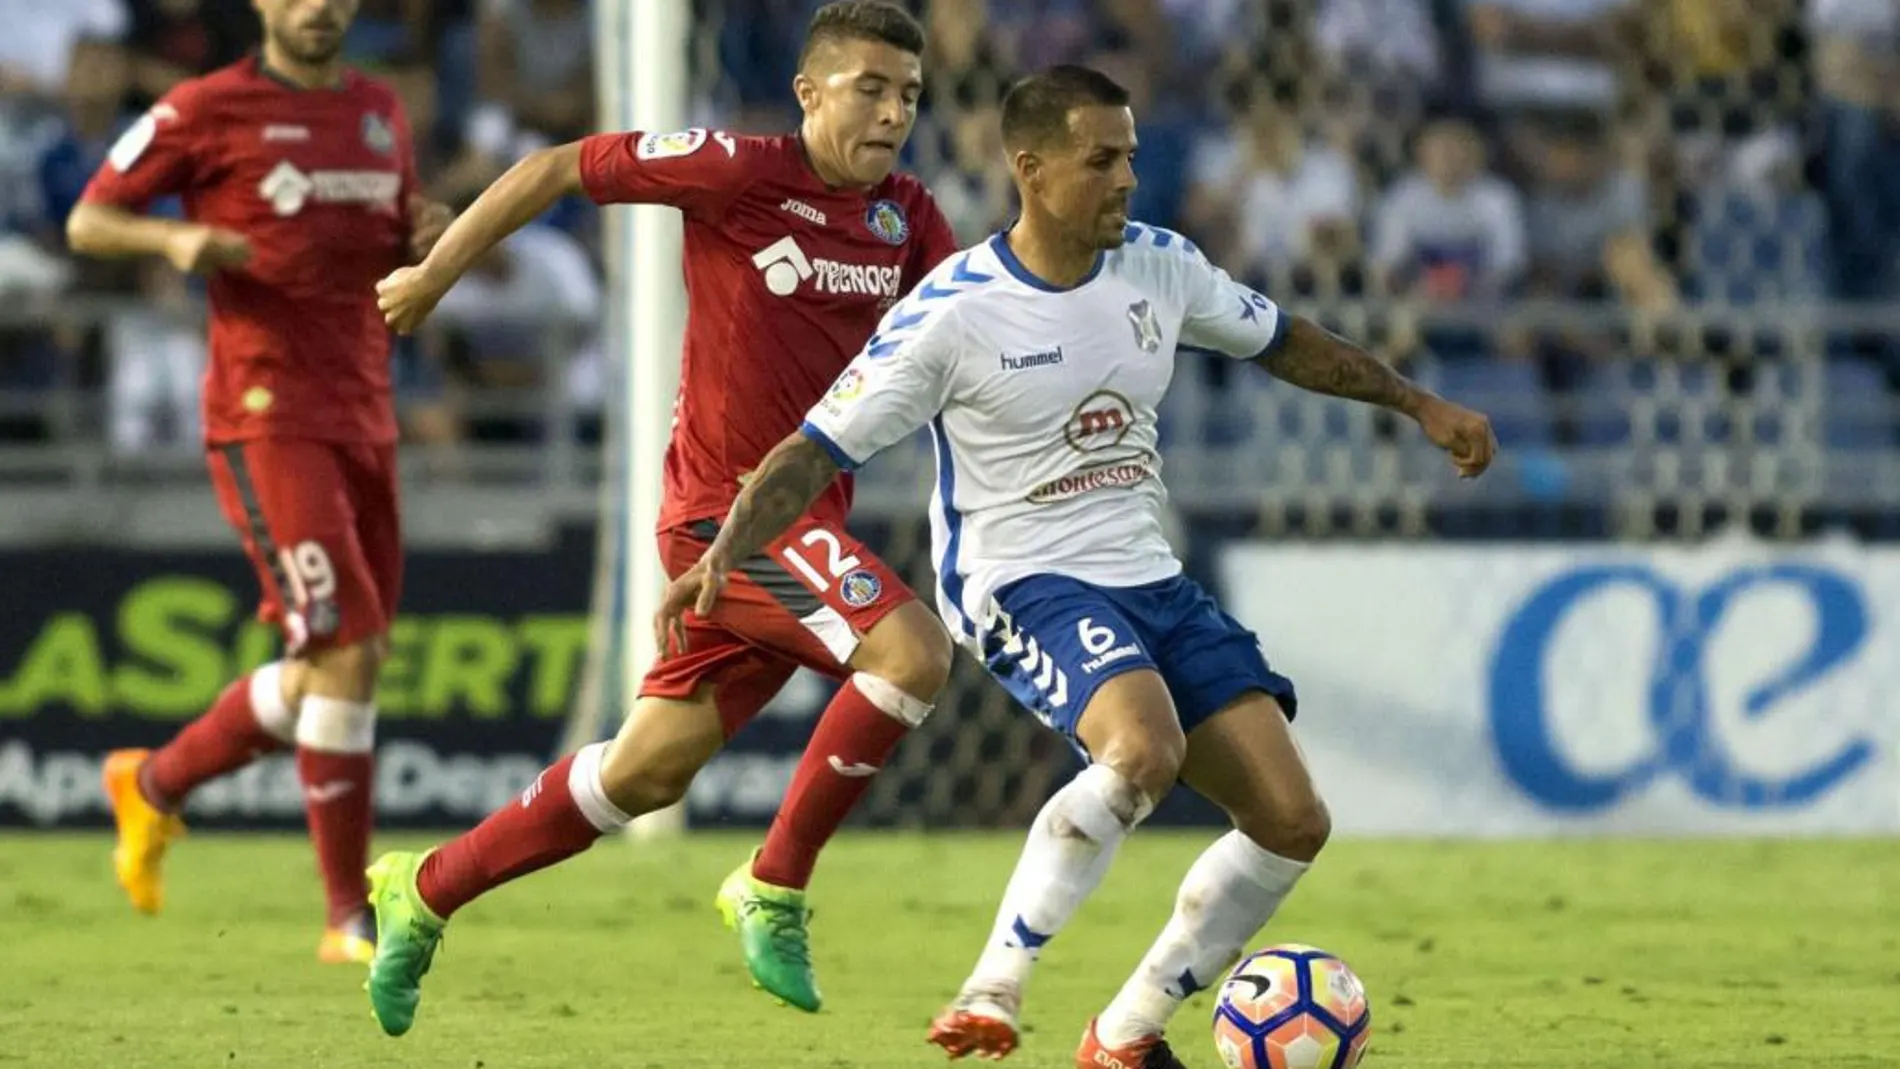 1-0. El Tenerife da el primer paso con un gol de Jorge